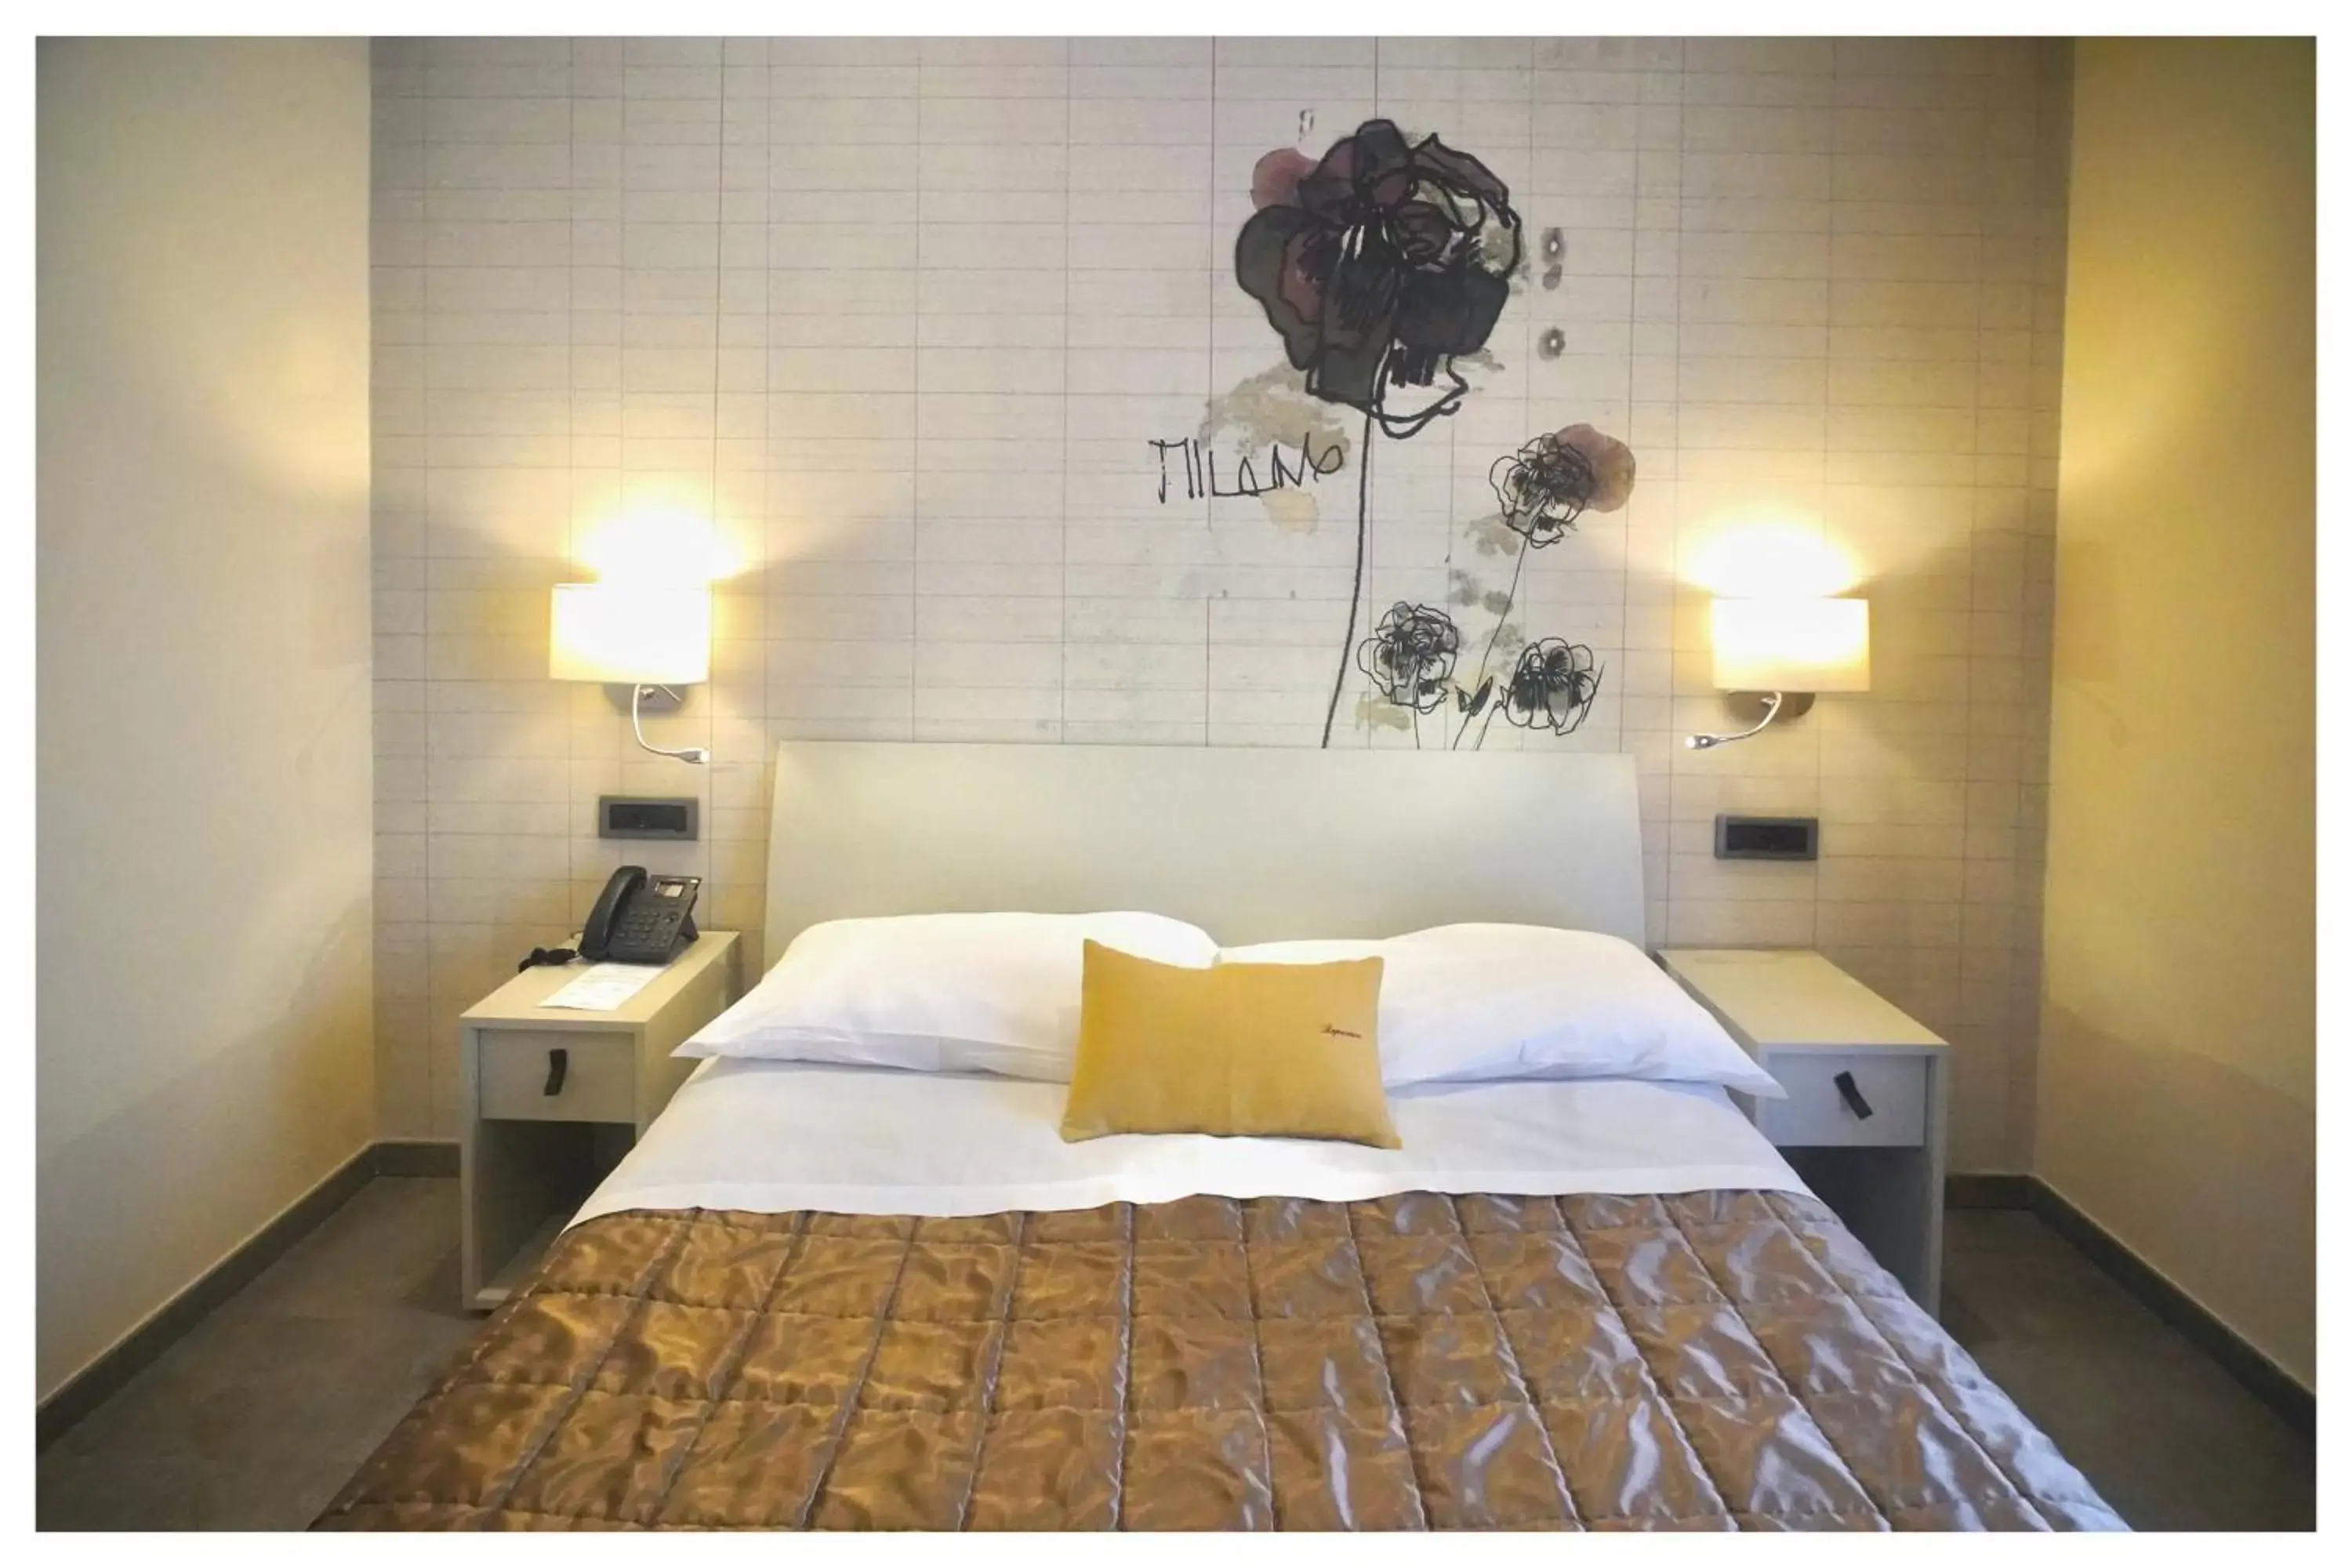 Bedroom, Bed in Tramas - Ospitalita' del Conte Hotel & Spa